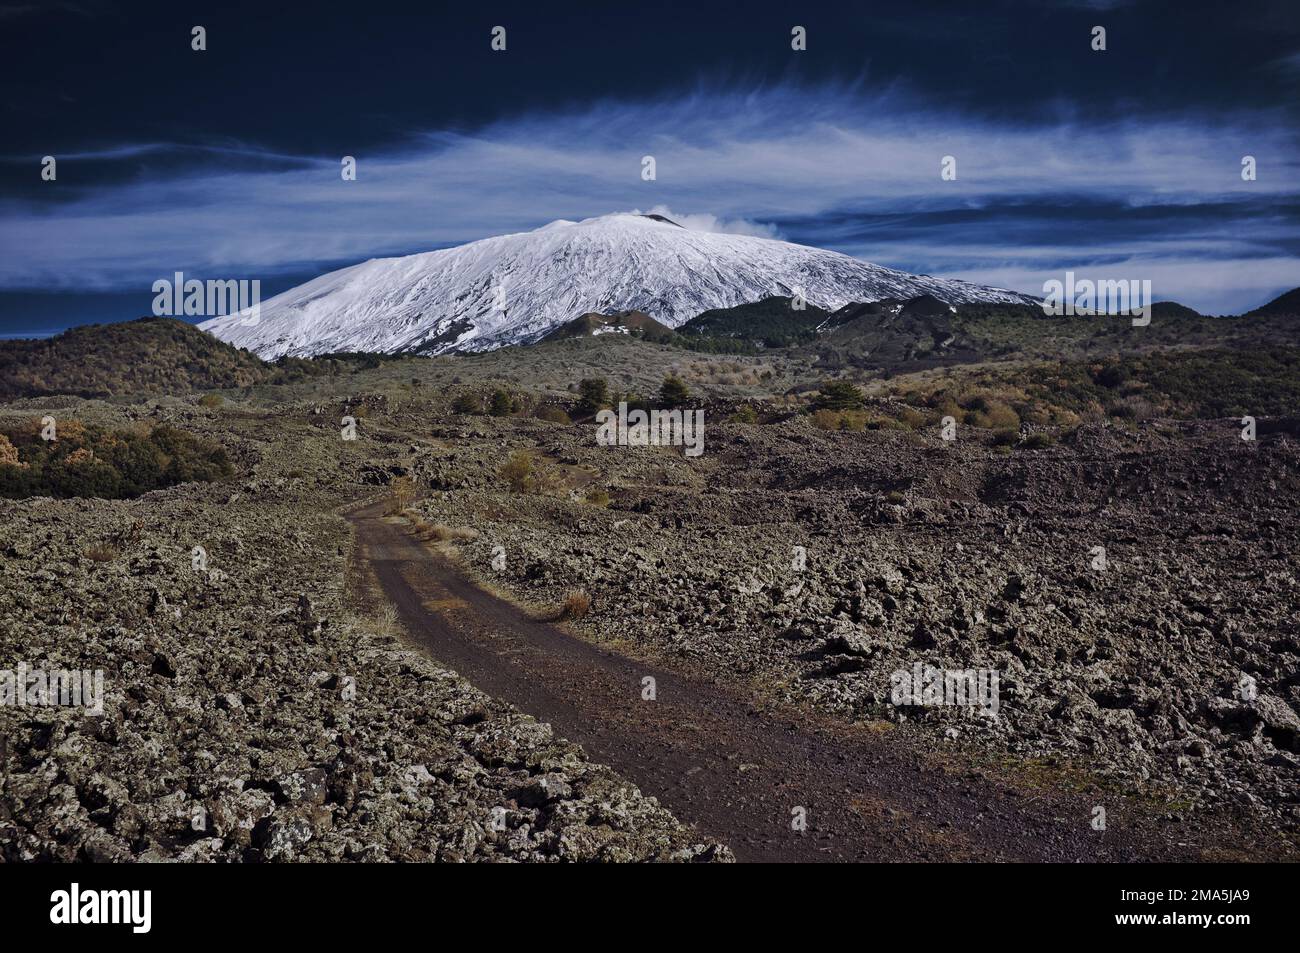 italian landscape of Mount Etna in National Park in Sicily, scenic path crosses volcano rocks, Italy Stock Photo